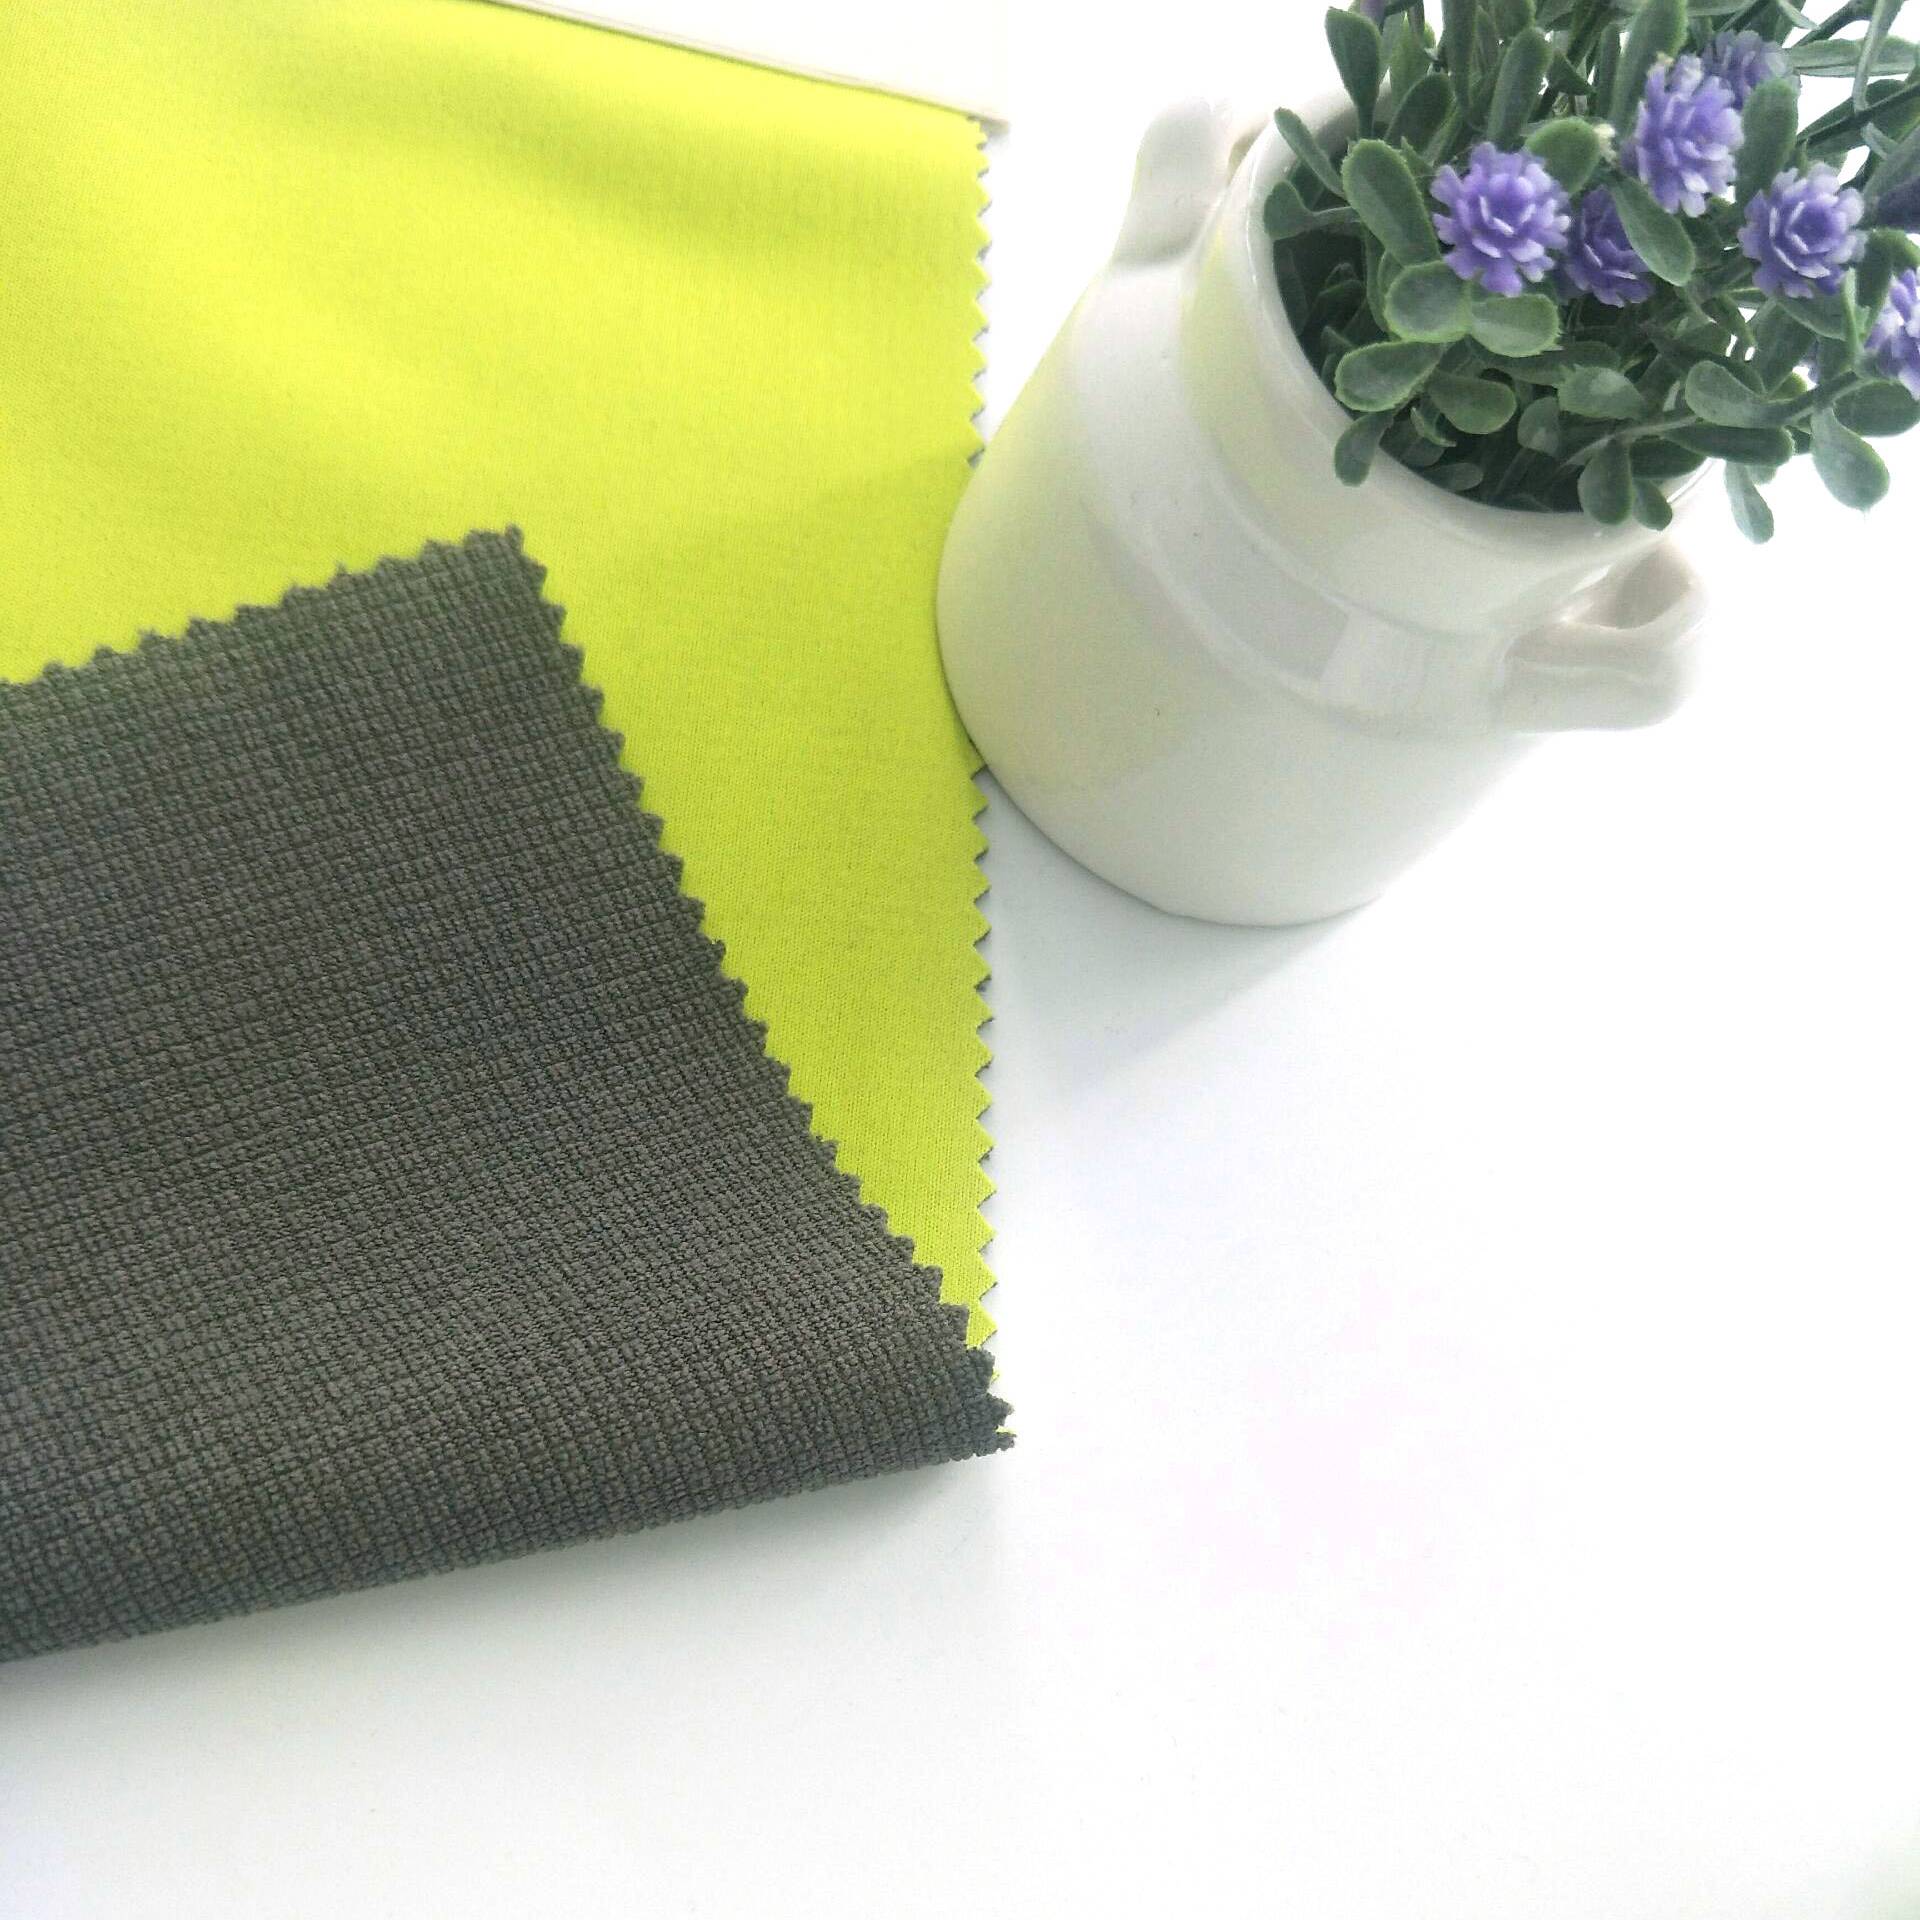 ຍອດຂາຍ 100% polyester interlock fabric ຜູກມັດຮູບເງົາ bonded ຕາຂ່າຍໄຟຟ້າ fleece ສໍາລັບກິລາ